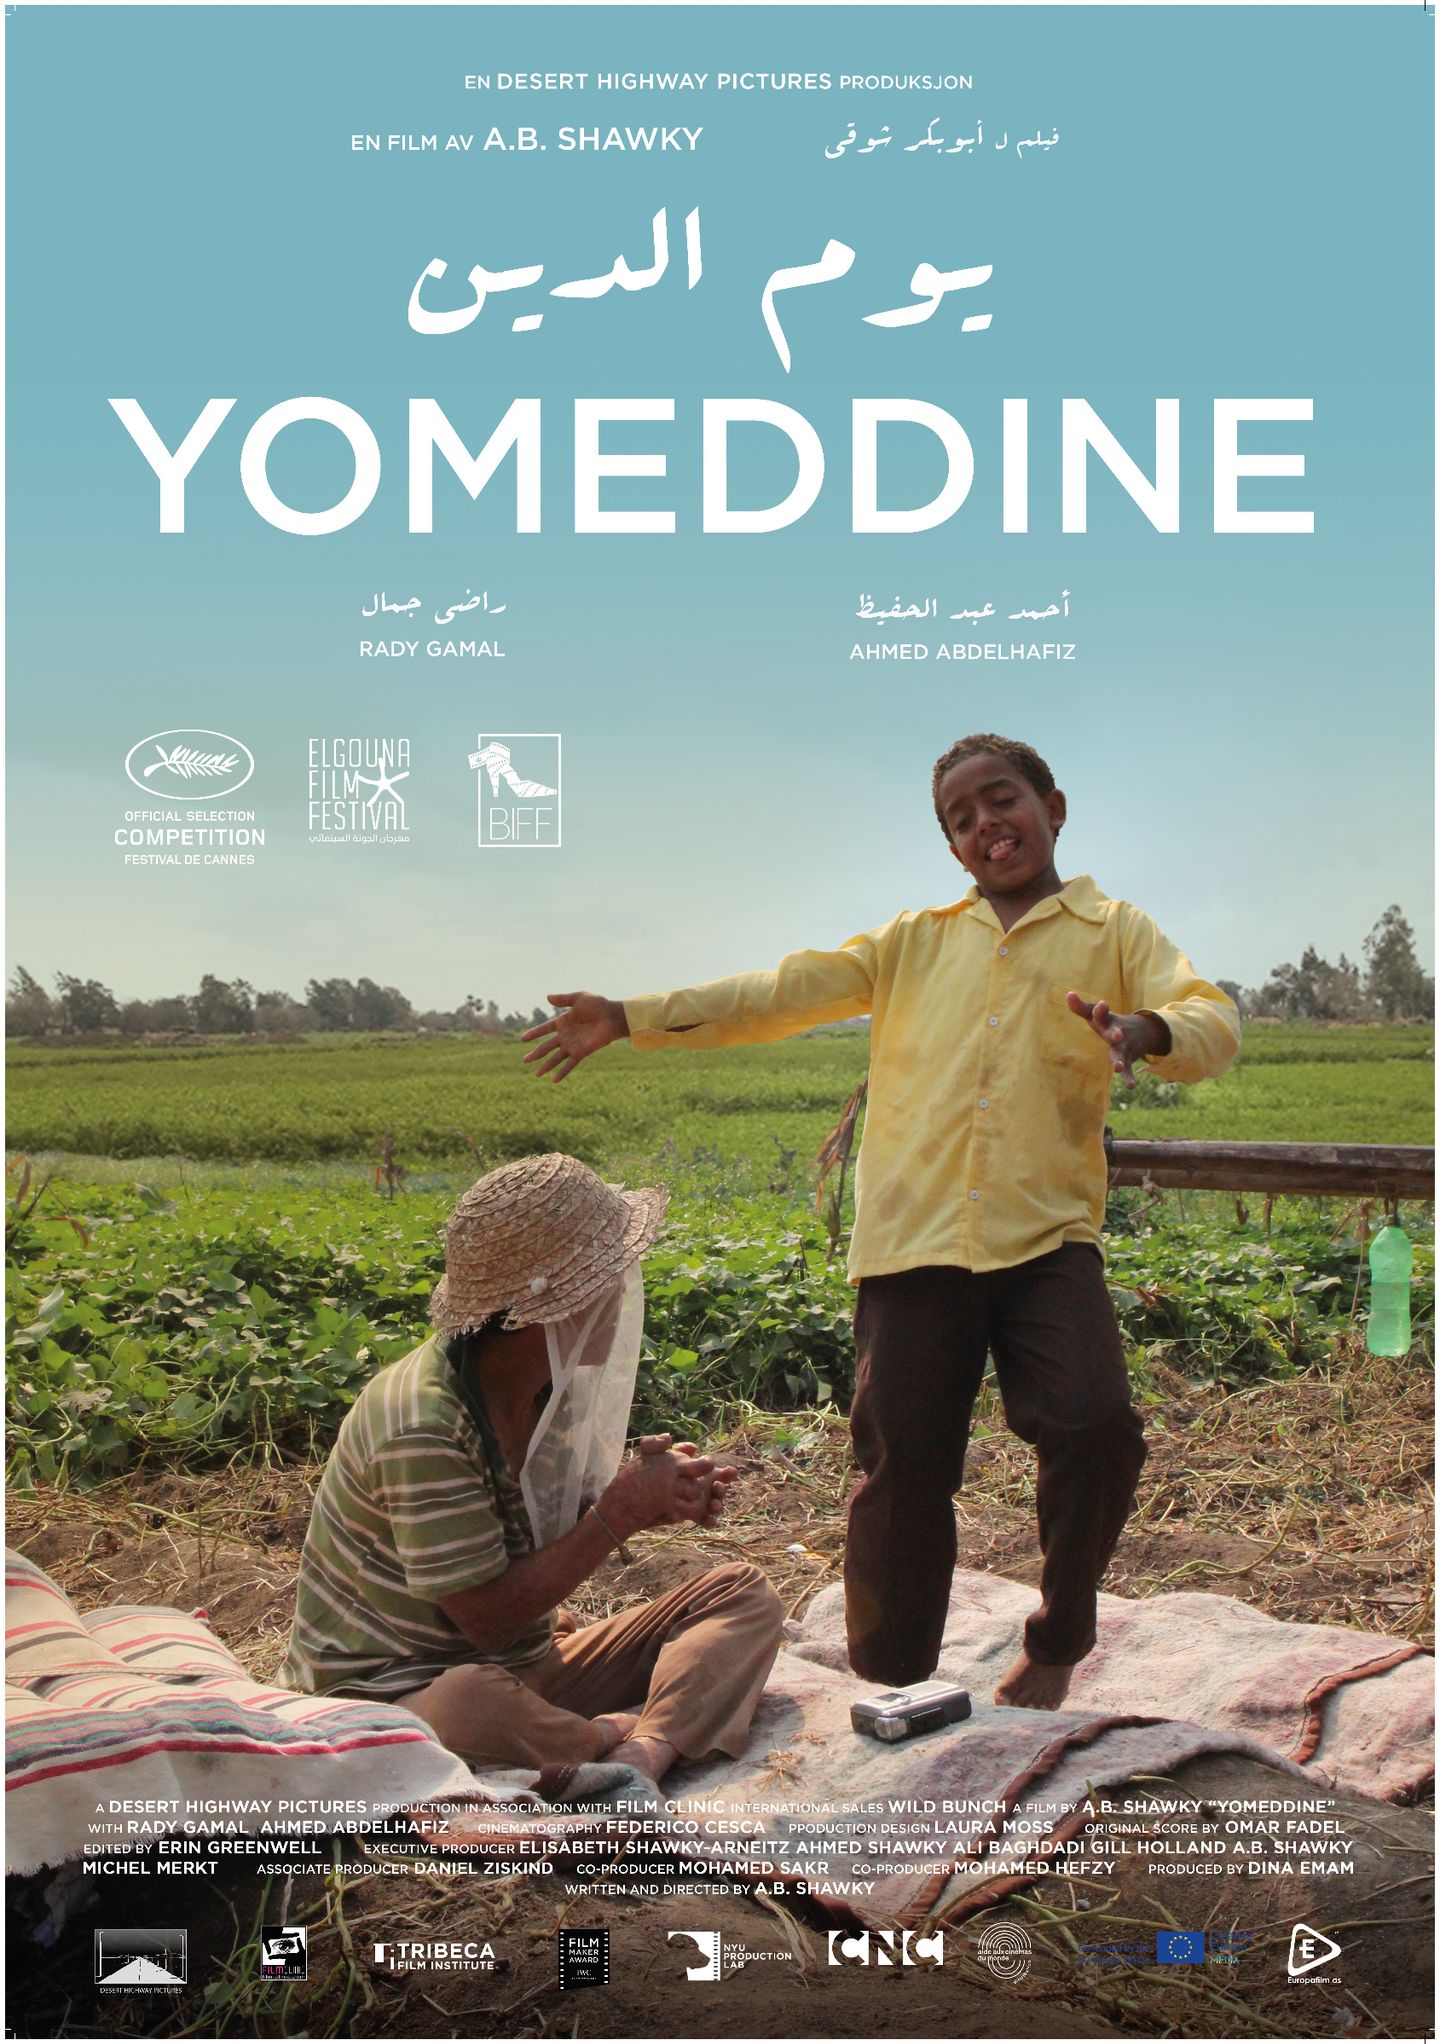 Plakat for 'Yomeddine'